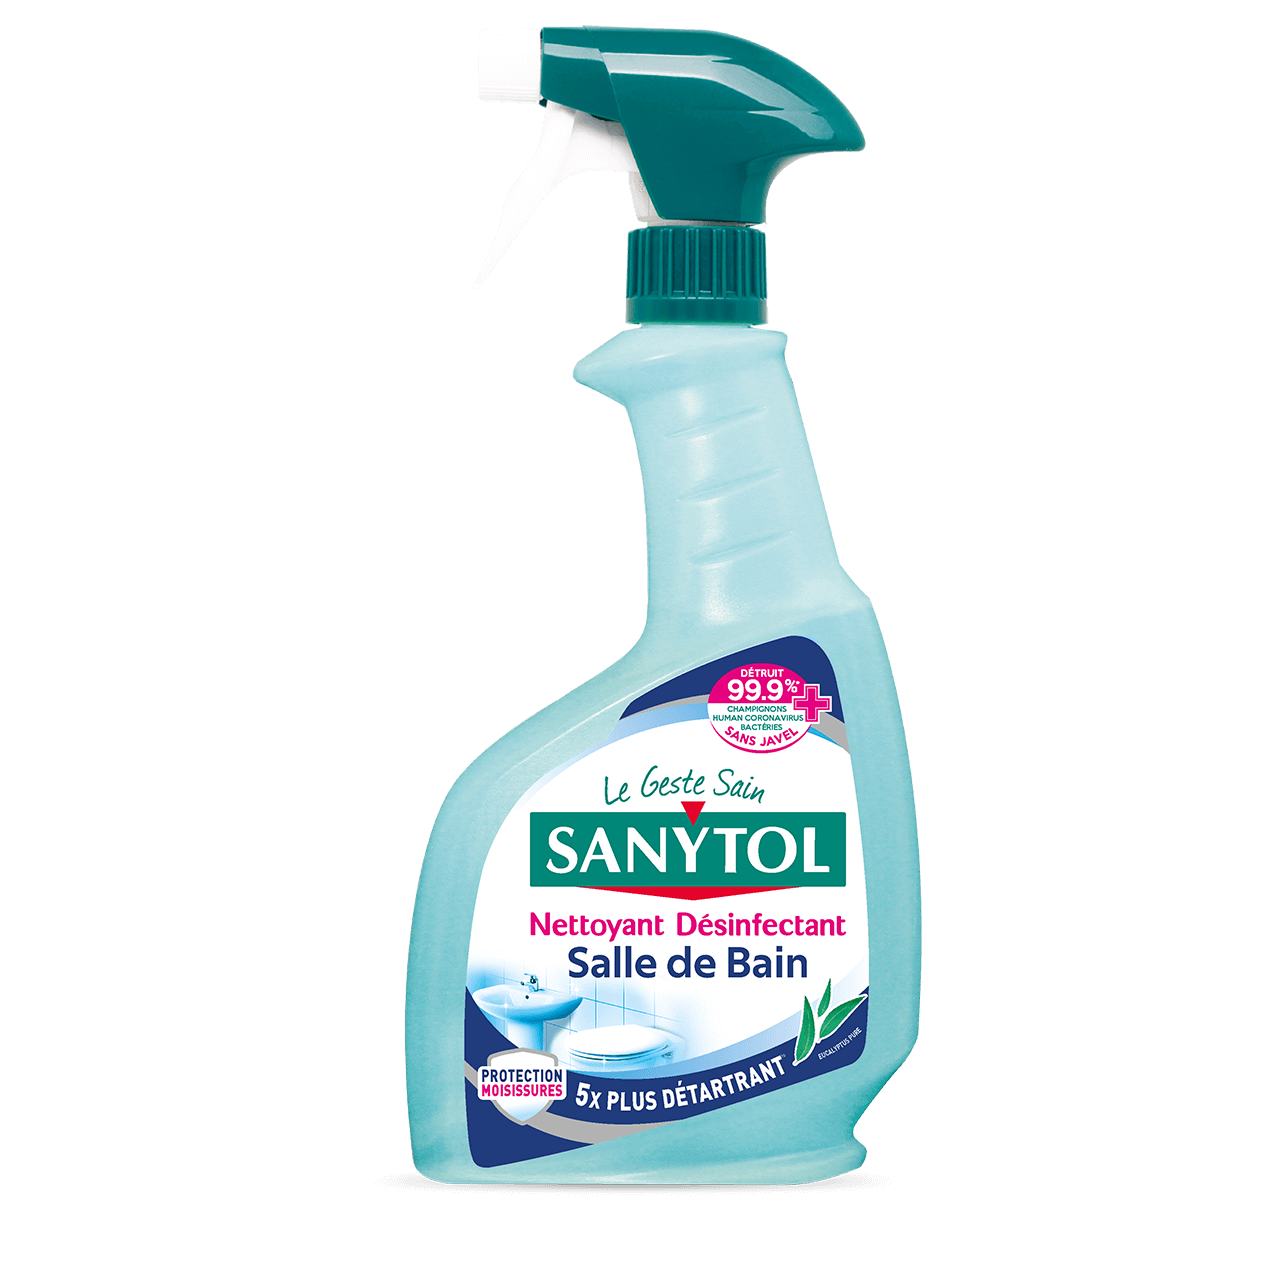 Sanytol - Désinfectant Nettoyant Multi-usages Eucalyptus & Menthe - 500ml